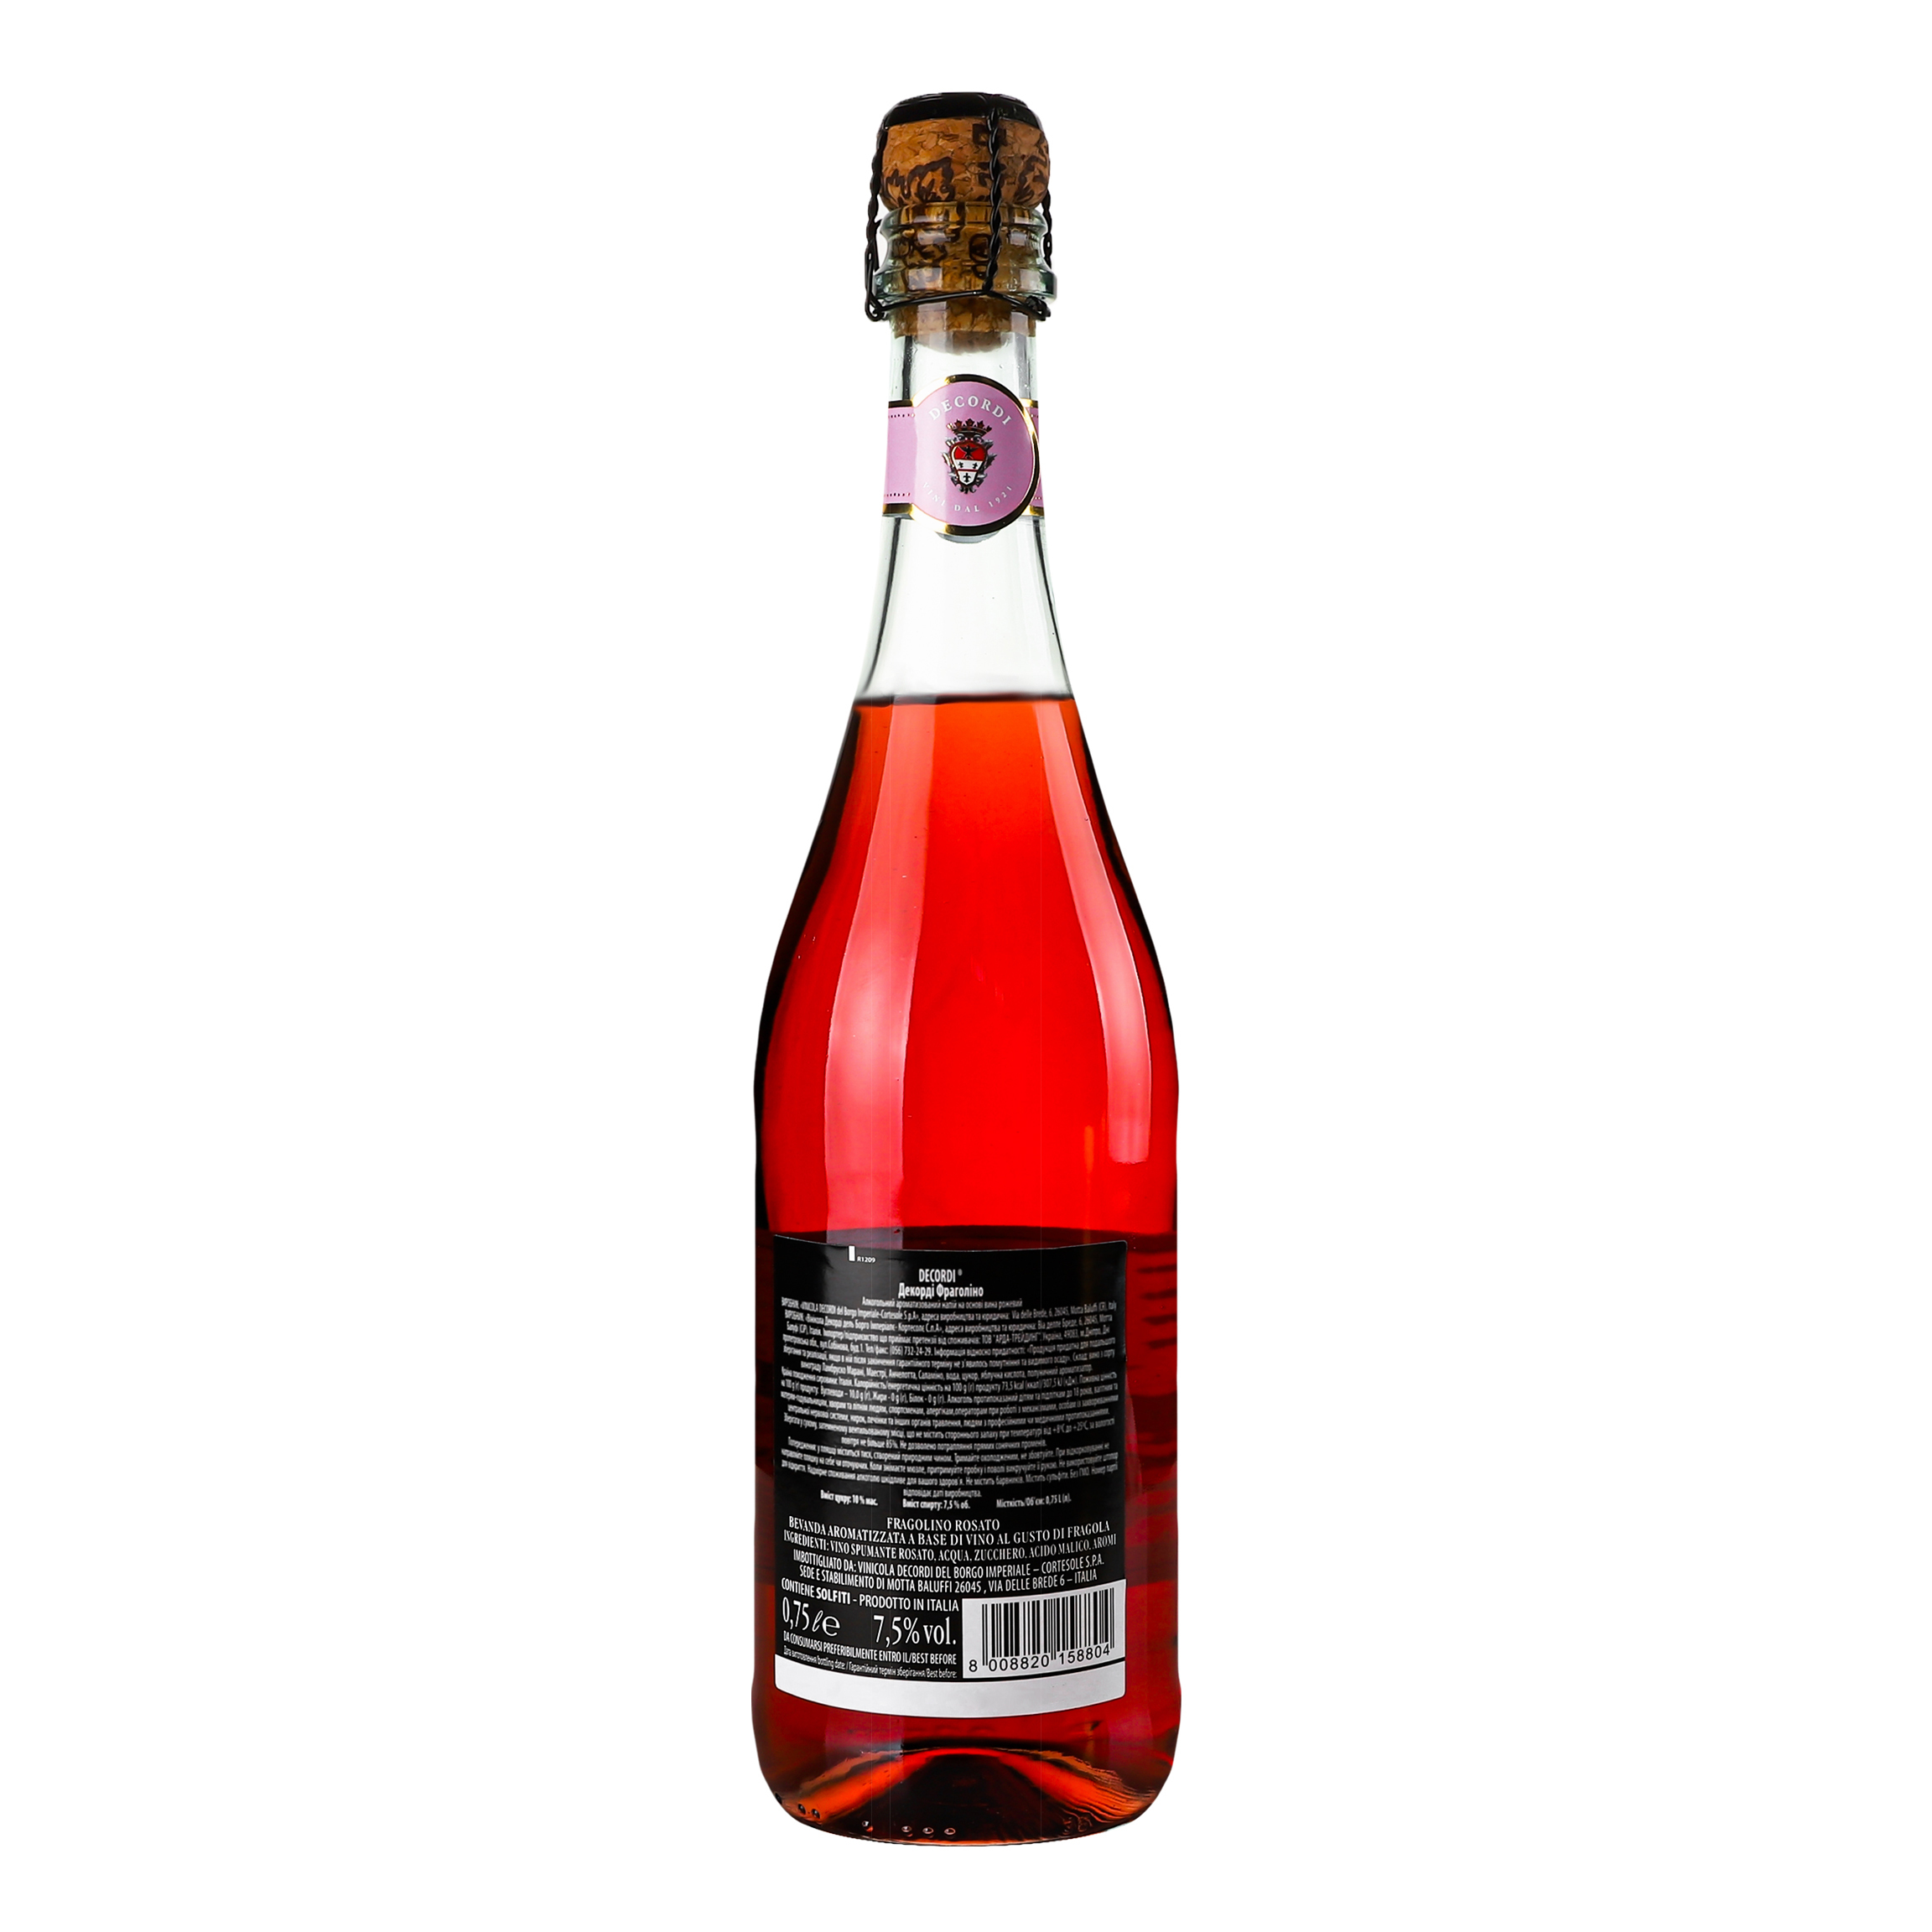 Ароматизированный напиток на основе вина Decordi Fragolino Rosato, розовый, полусладкий, 7,5%, 0,75 л - фото 4